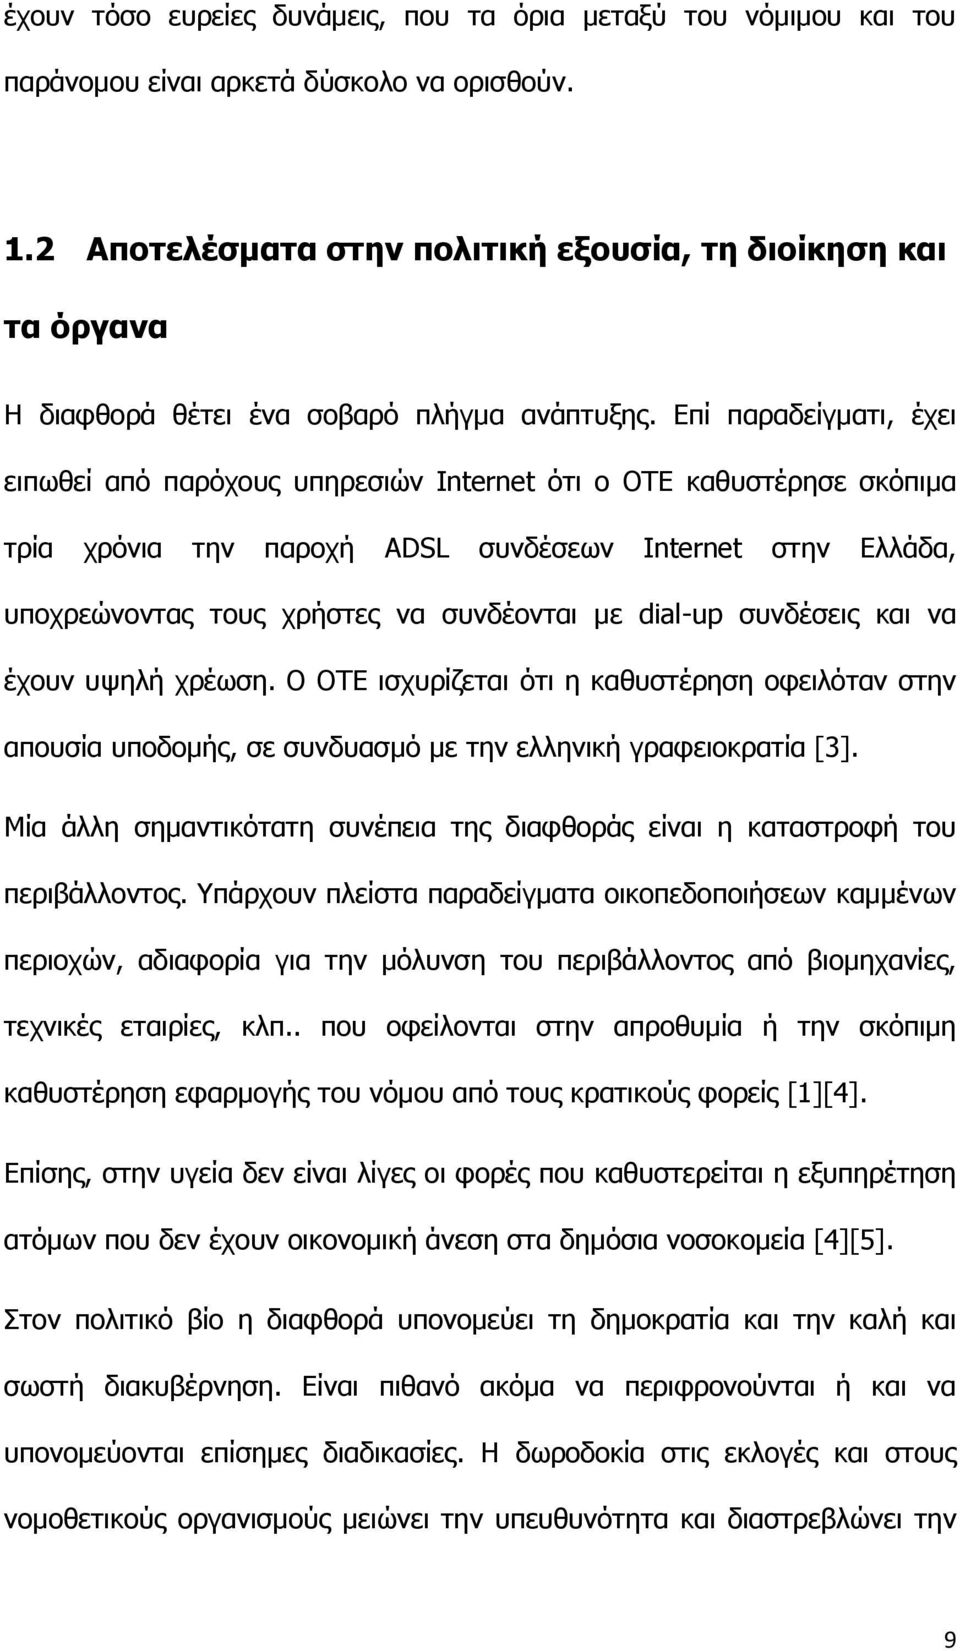 Επί παραδείγματι, έχει ειπωθεί από παρόχους υπηρεσιών Internet ότι ο ΟΤΕ καθυστέρησε σκόπιμα τρία χρόνια την παροχή ADSL συνδέσεων Internet στην Ελλάδα, υποχρεώνοντας τους χρήστες να συνδέονται με